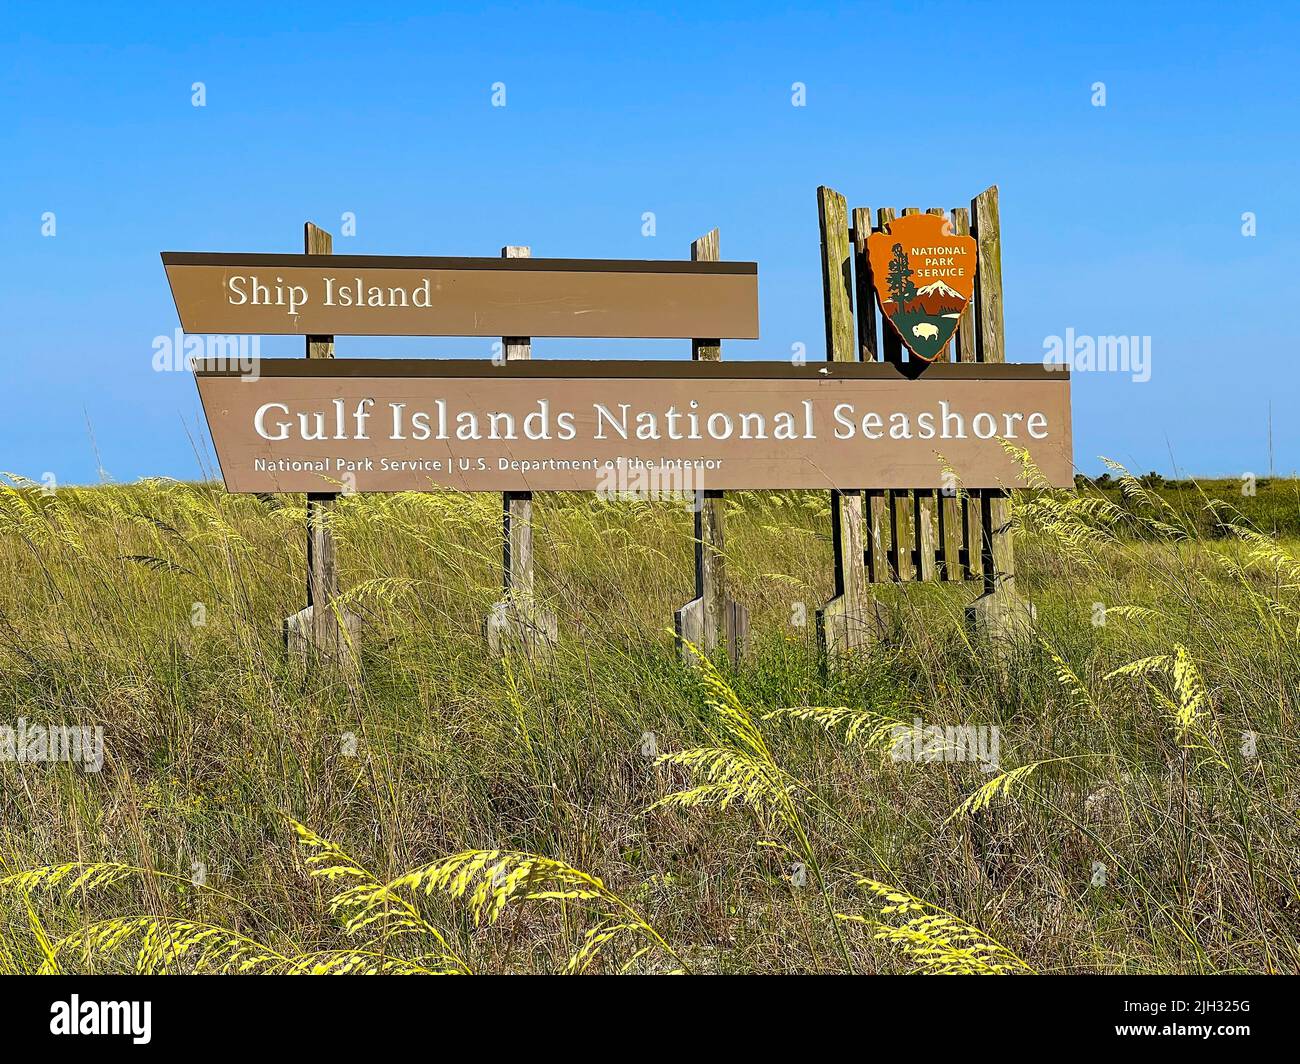 Île Ship, MS - 17 juin 2022 : l'île Ship fait partie du littoral national des îles Gulf, qui fait partie du service des parcs nationaux Banque D'Images